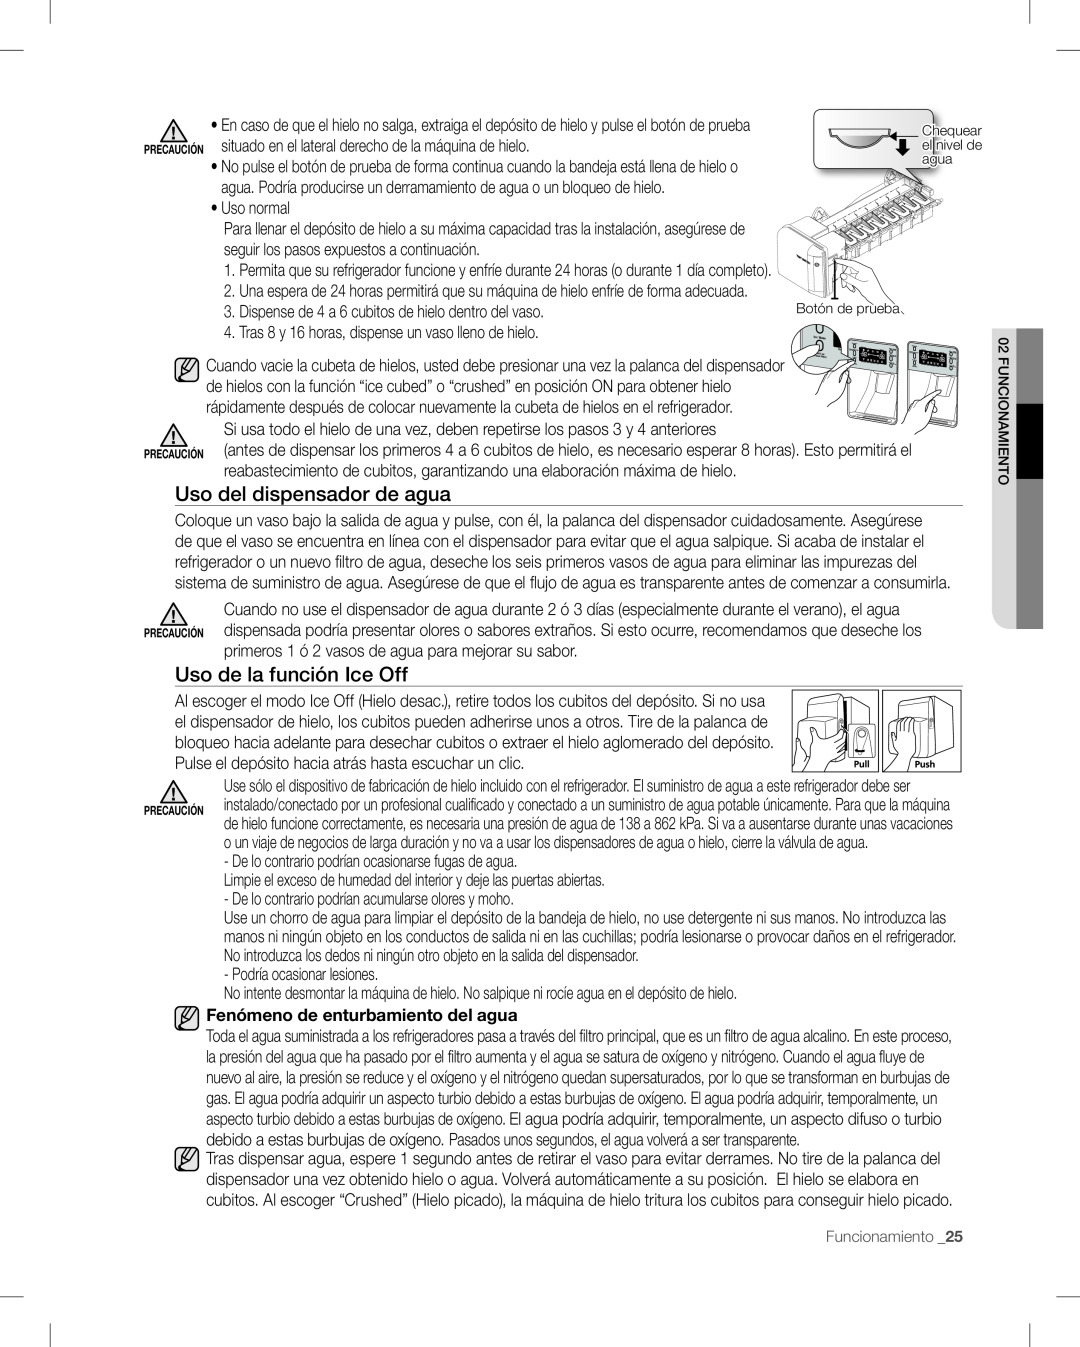 Samsung RF268AB user manual Uso del dispensador de agua, Uso de la función Ice Off, Fenómeno de enturbamiento del agua 